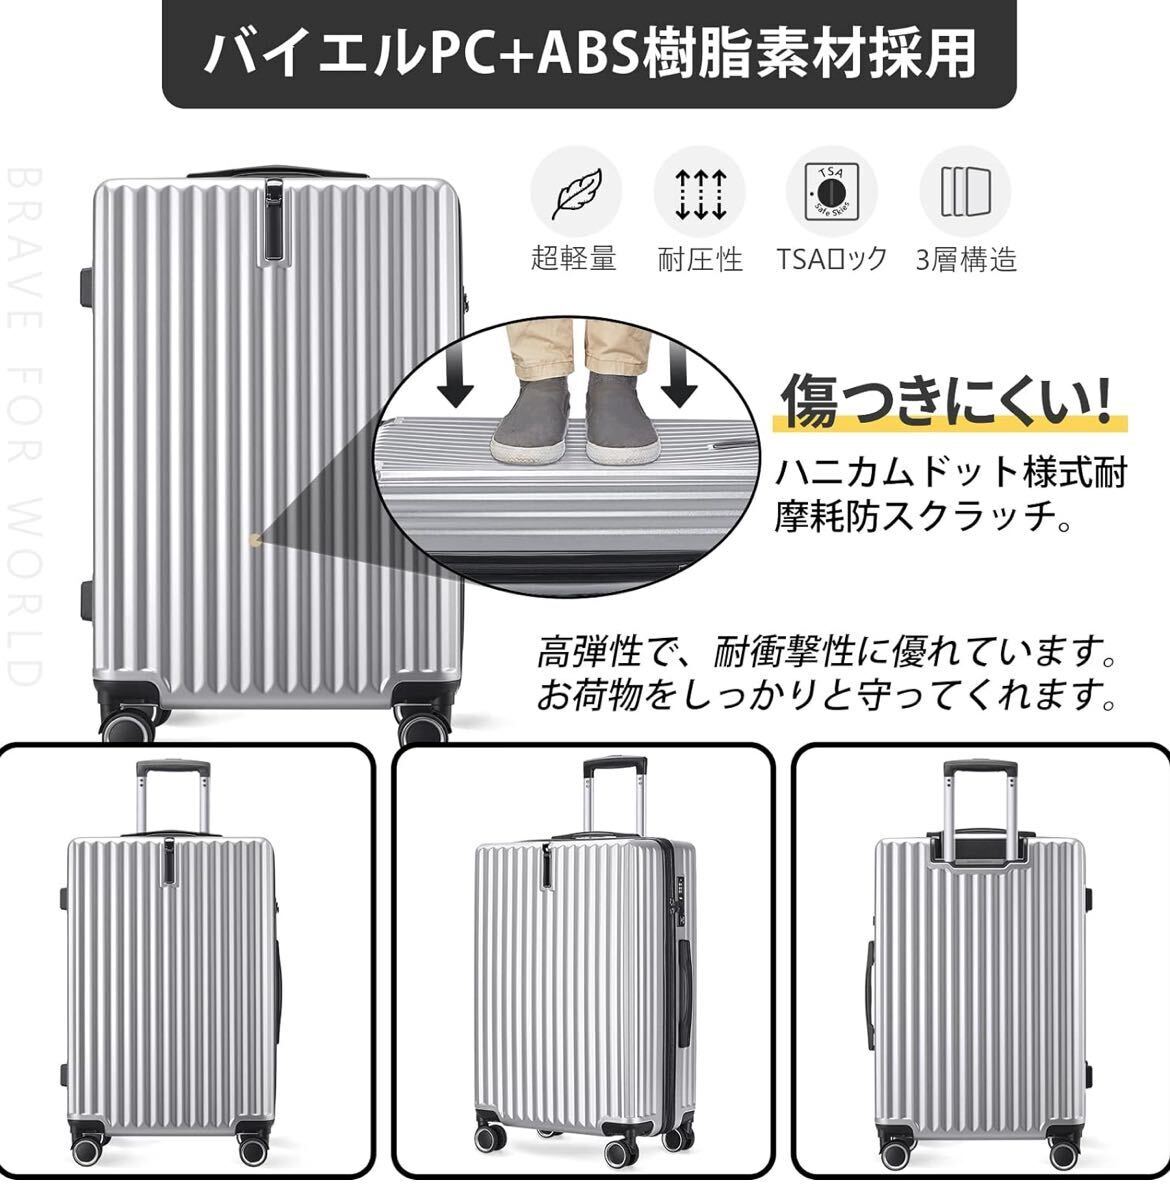 キャリーケース Mサイズ シルバー スーツケース TSAロック 大容量 ダブルキャスター_画像2